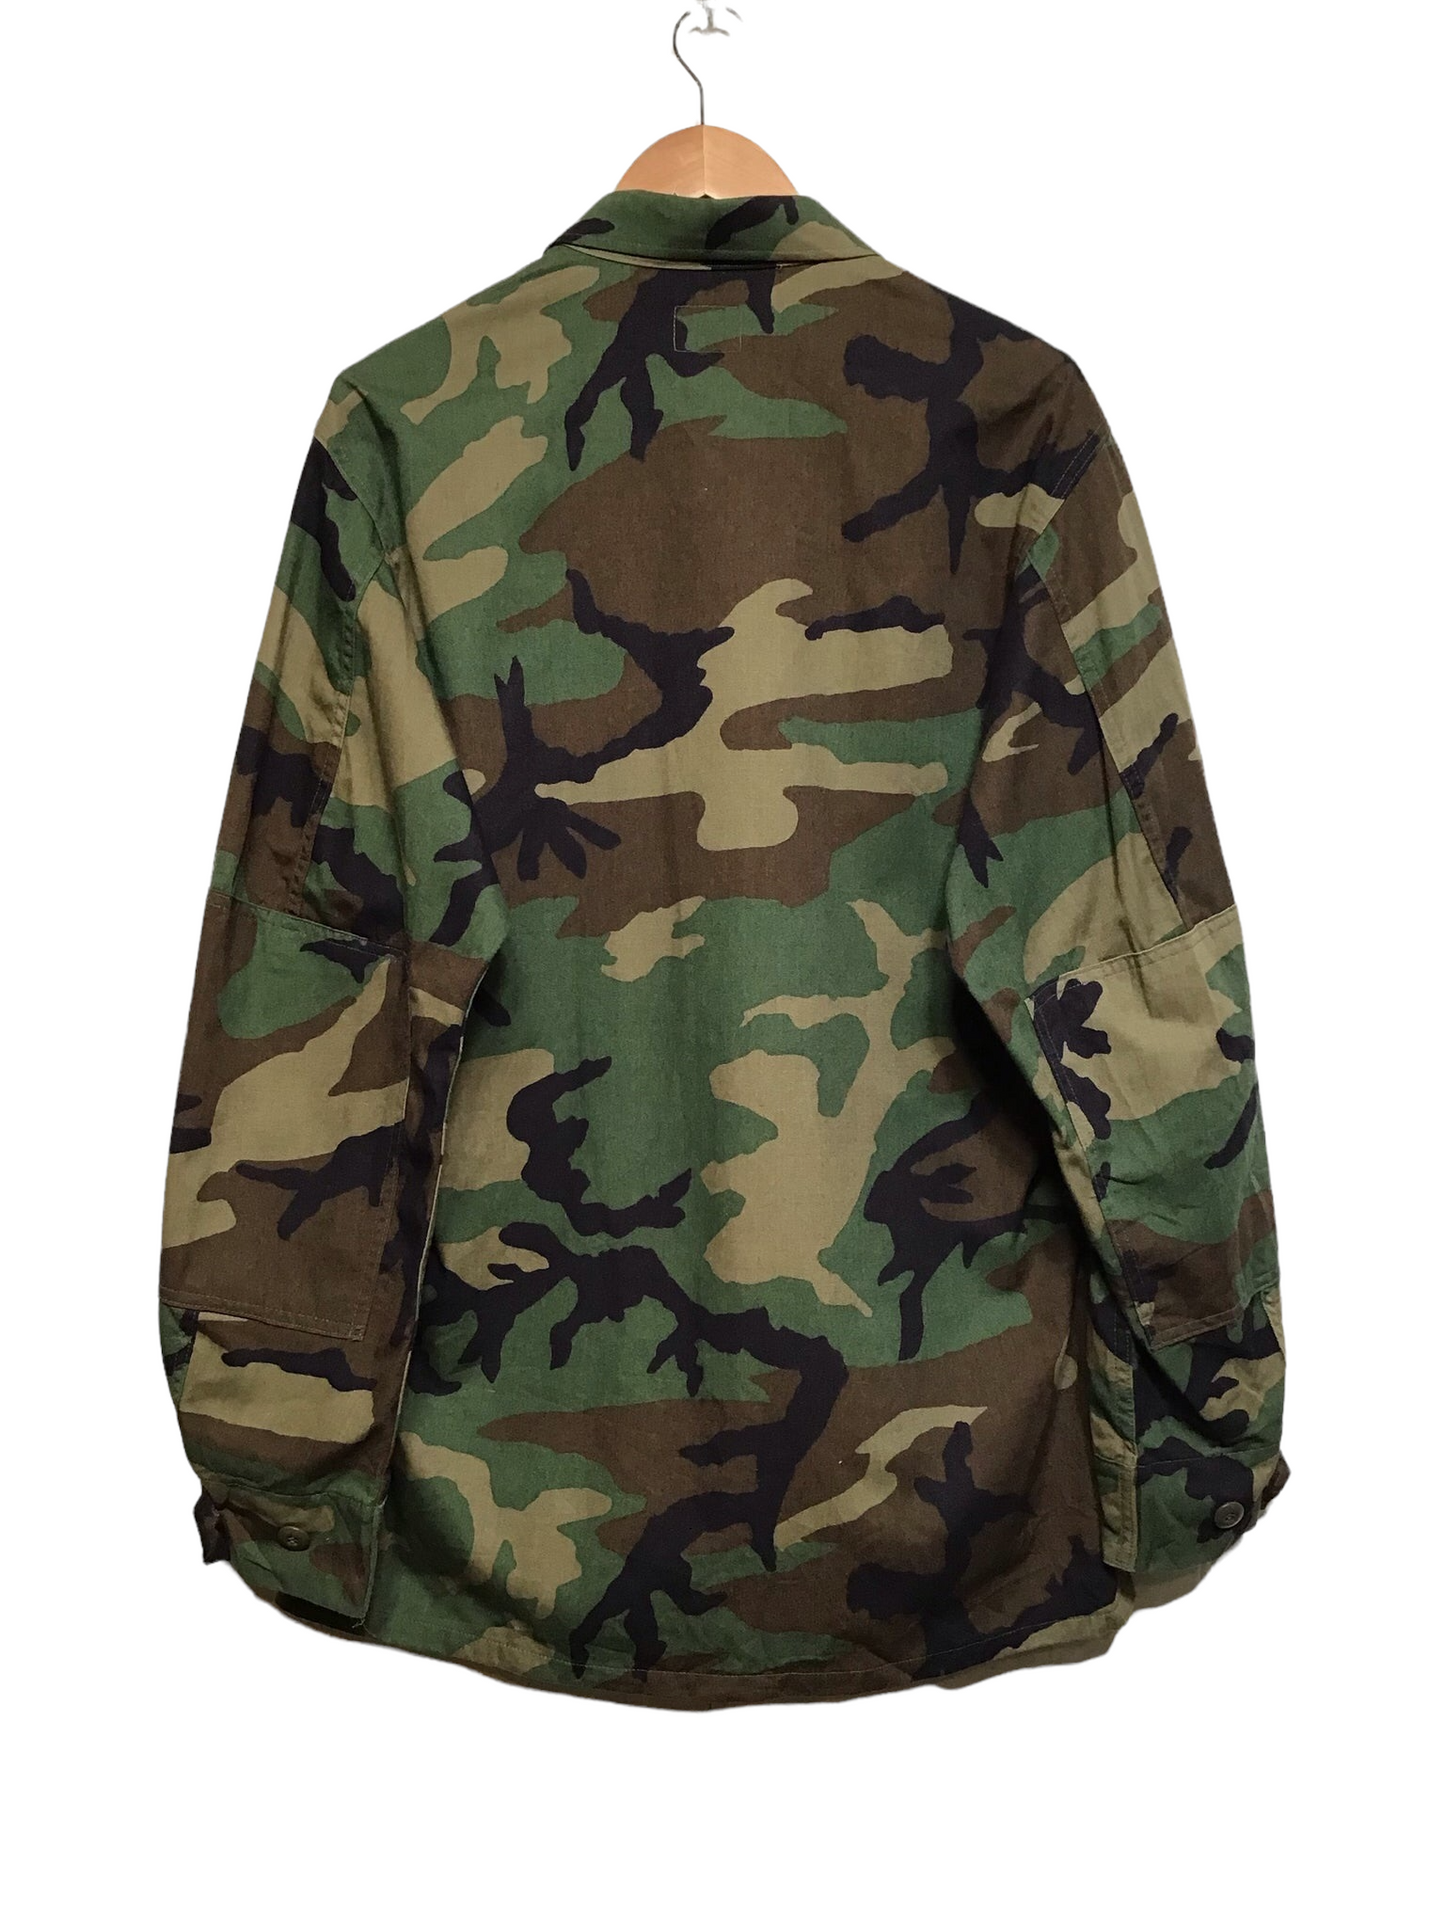 Army Jacket (Size M)